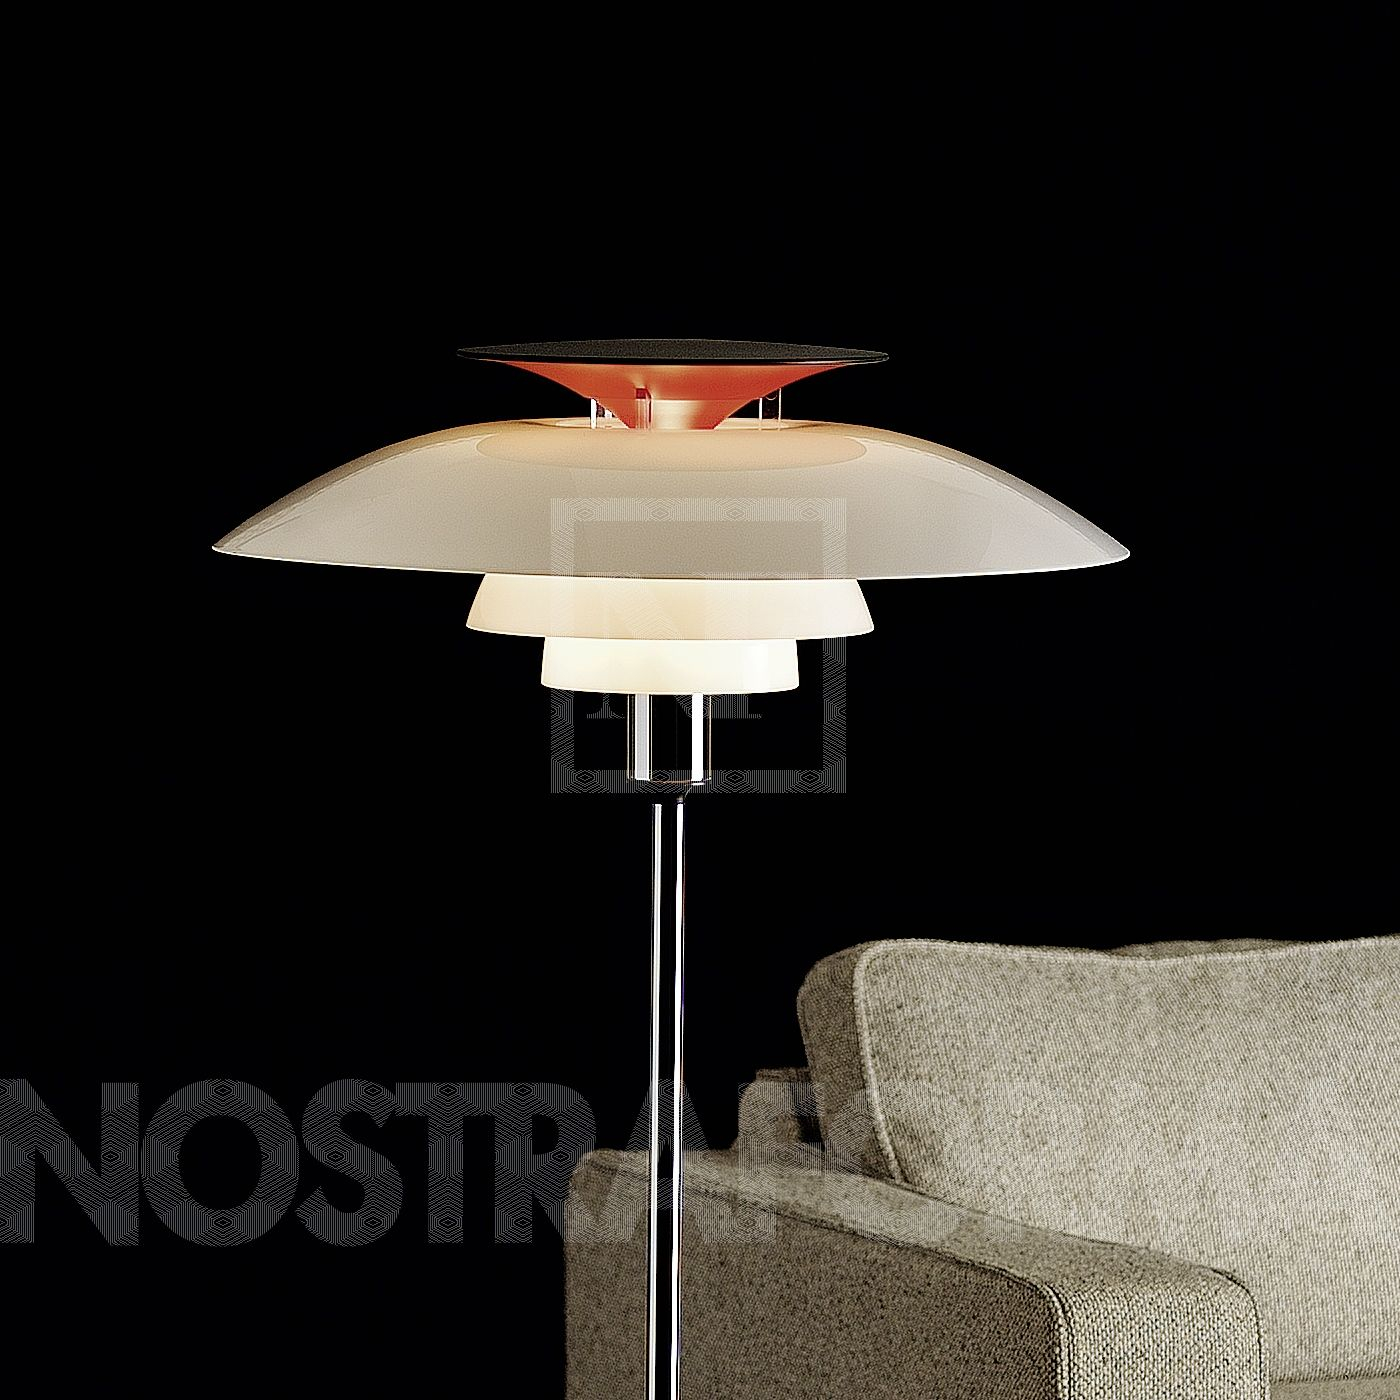 Louis Poulsen Ph 80 Floor Lamp throughout dimensions 1400 X 1400